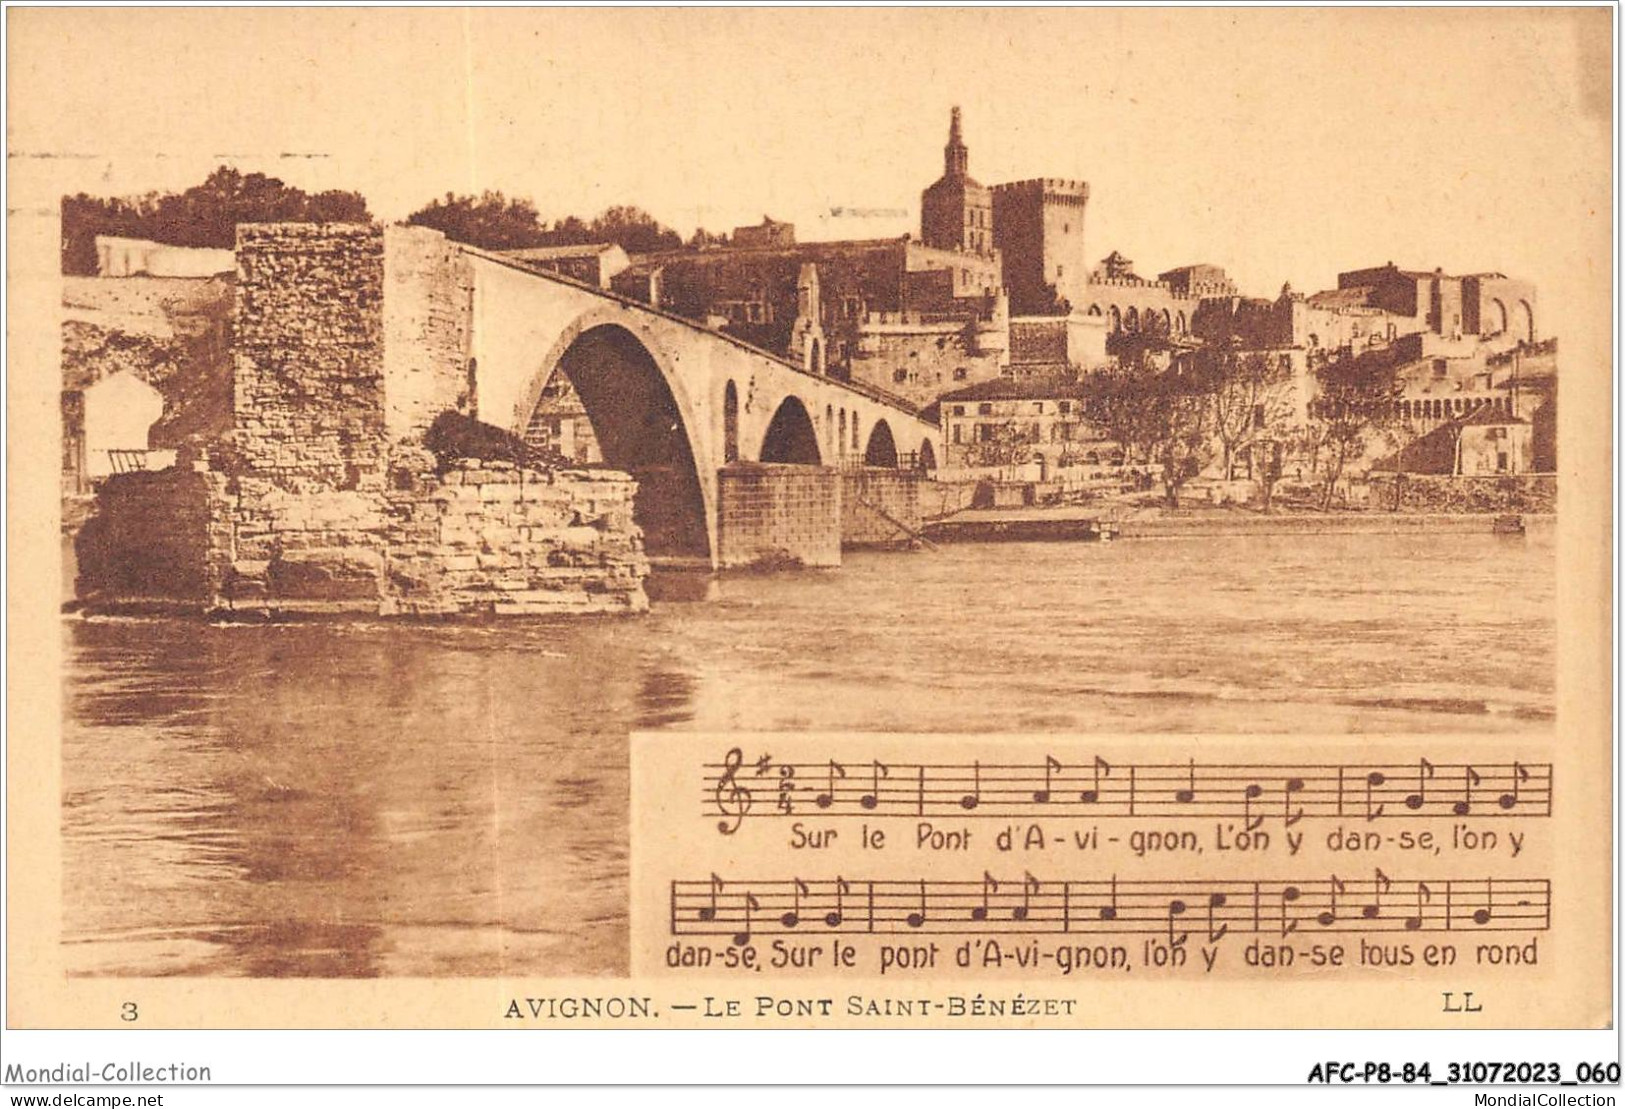 AFCP8-84-0845 - AVIGNON - Le Pont Saint-bénézet  - Avignon (Palais & Pont)